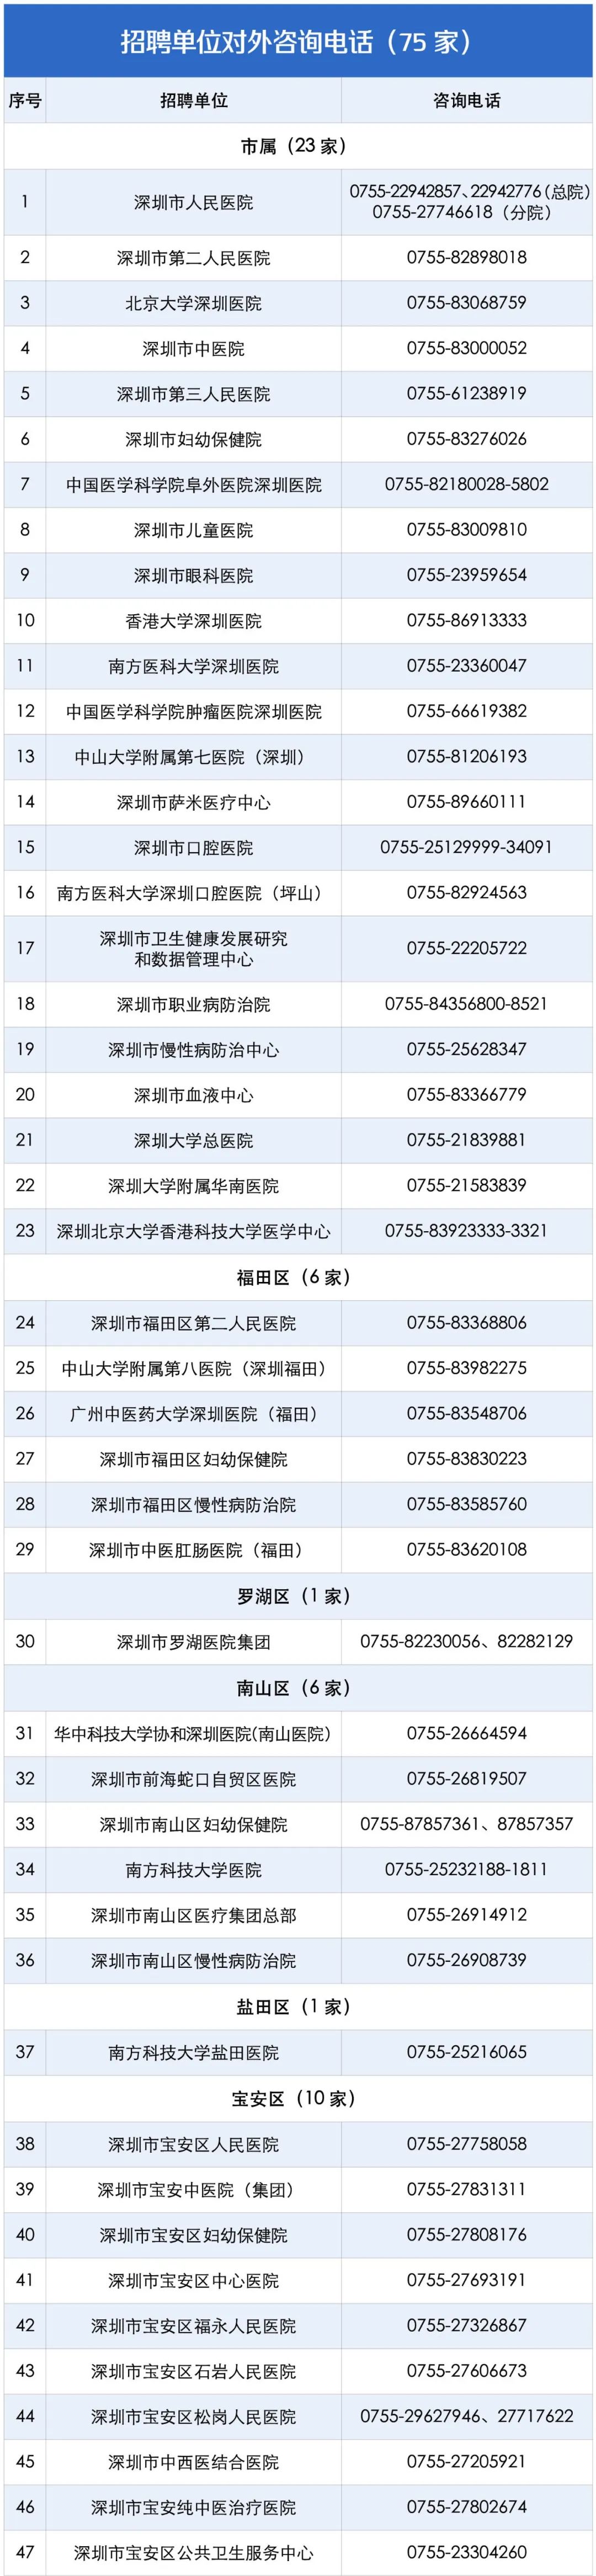 2022年深圳卫生健康系统招聘人员7062人公告